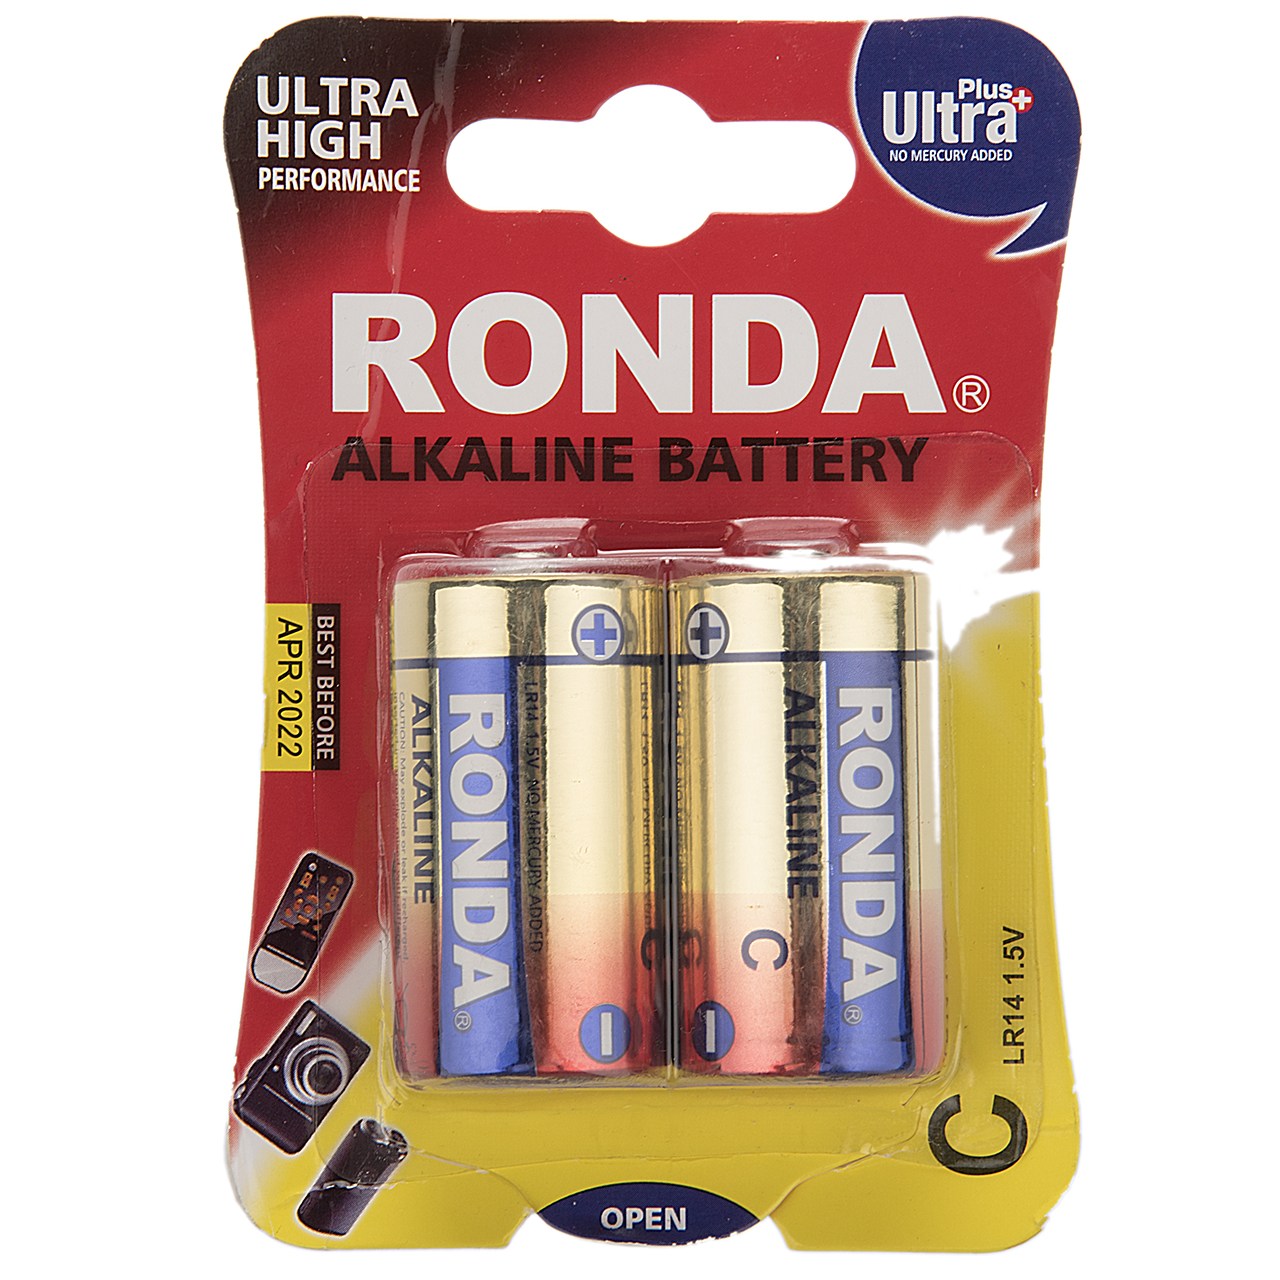 باتری سایز متوسط روندا مدل Ultra Plus Alkaline بسته 2 عددی